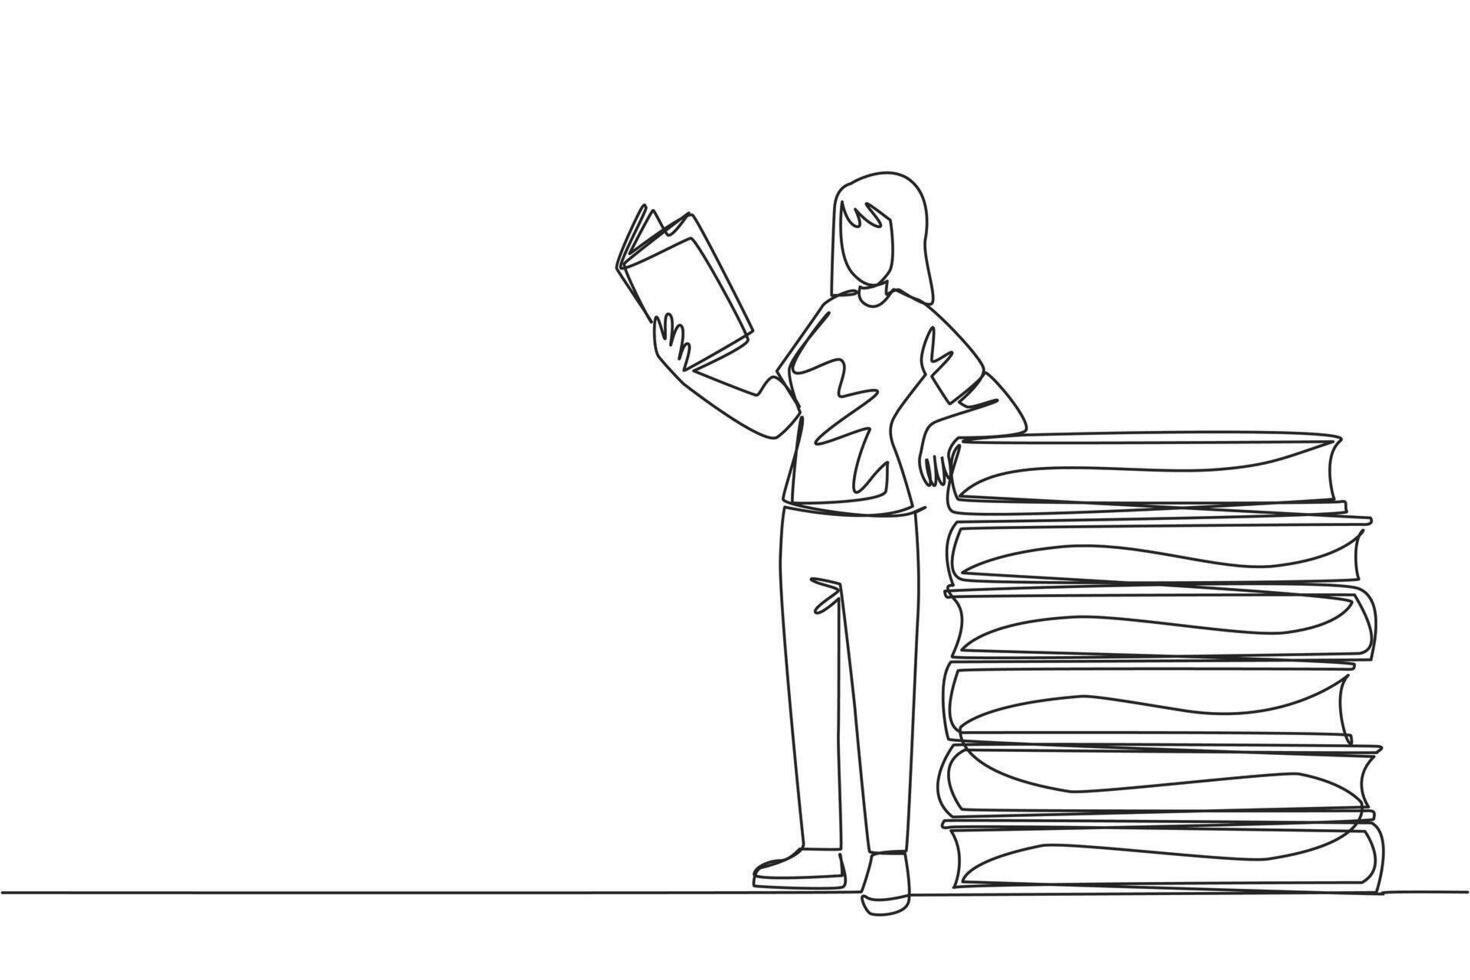 kontinuierlich einer Linie Zeichnung Frau Stehen lesen ein Buch während gelehnt gegen ein Stapel von groß Bücher. Hobby von lesen überall. sehr glücklich wann Lektüre. Single Linie zeichnen Design Illustration vektor